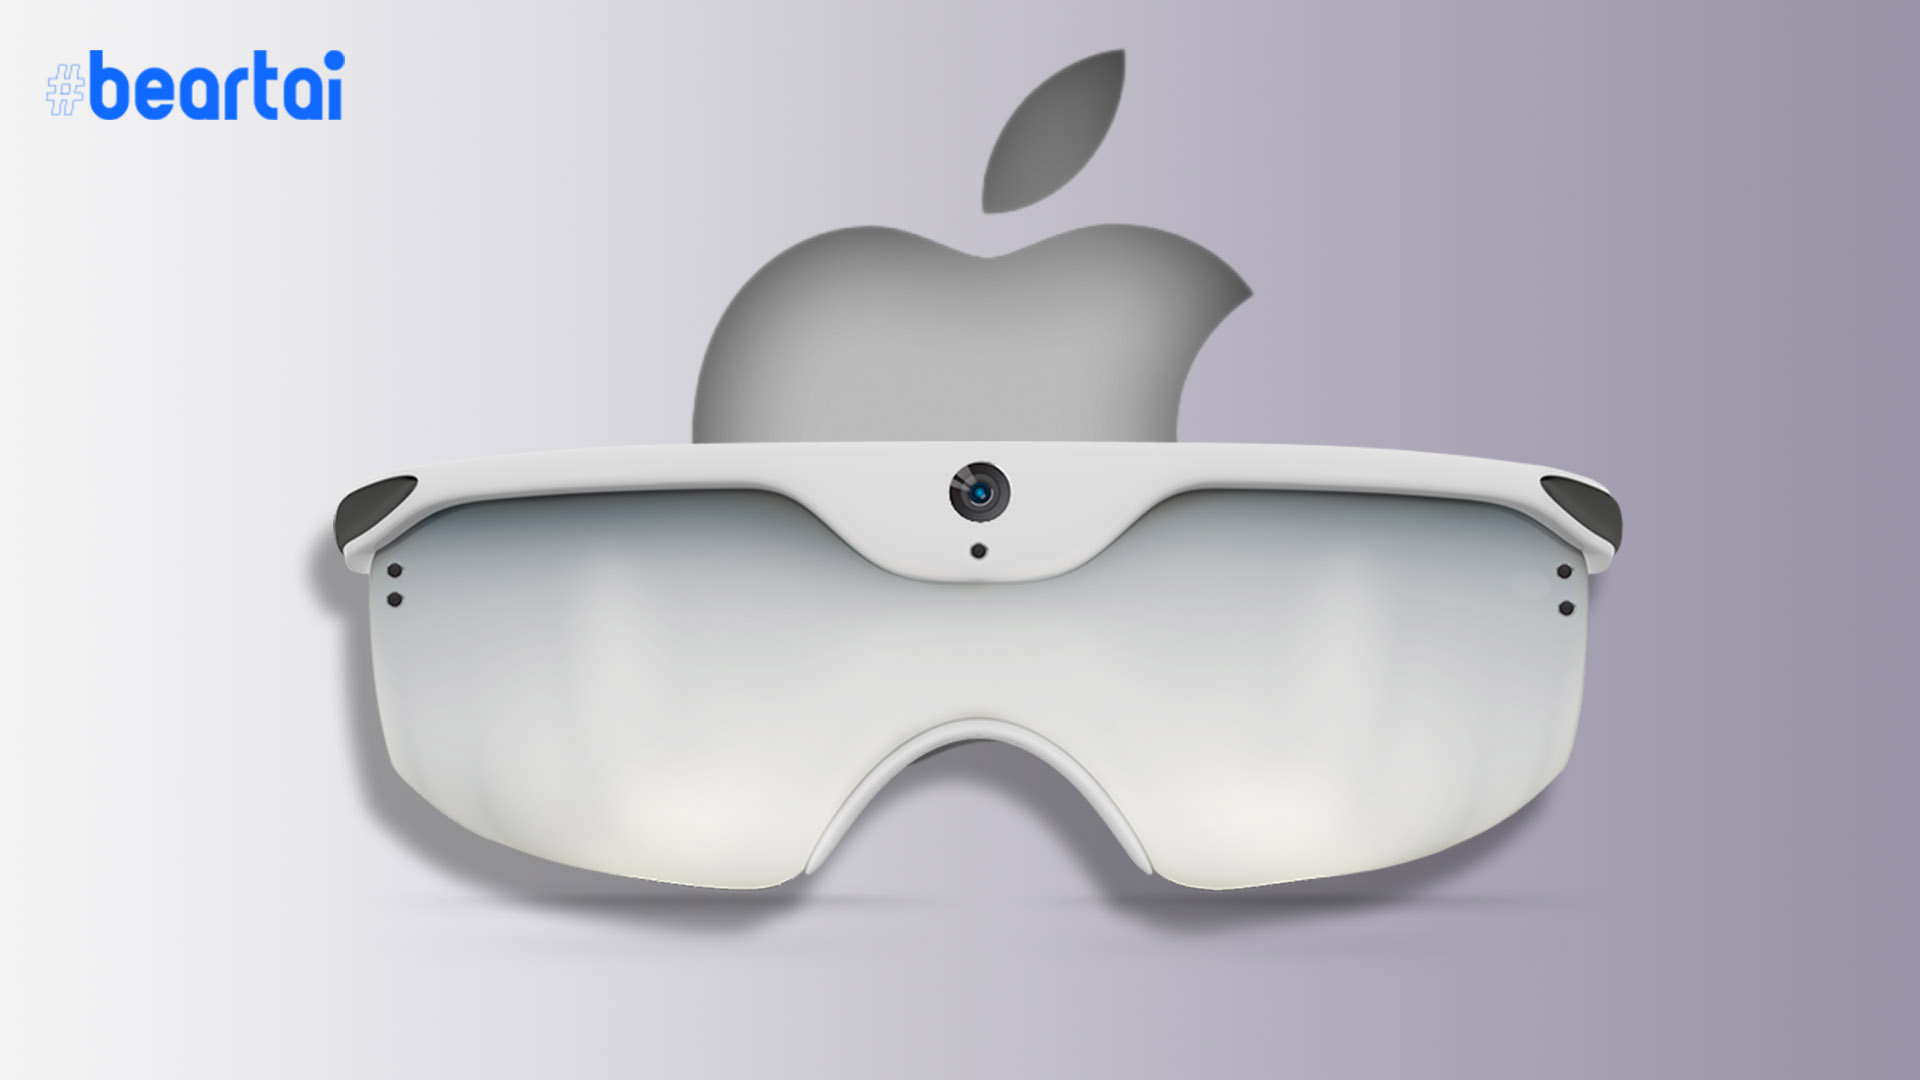 นักวิเคราะห์ของ Apple คาดว่าแว่น AR จะออกมาเป็นอุปกรณ์เสริมของ iPhone ต้นปีหน้านี้